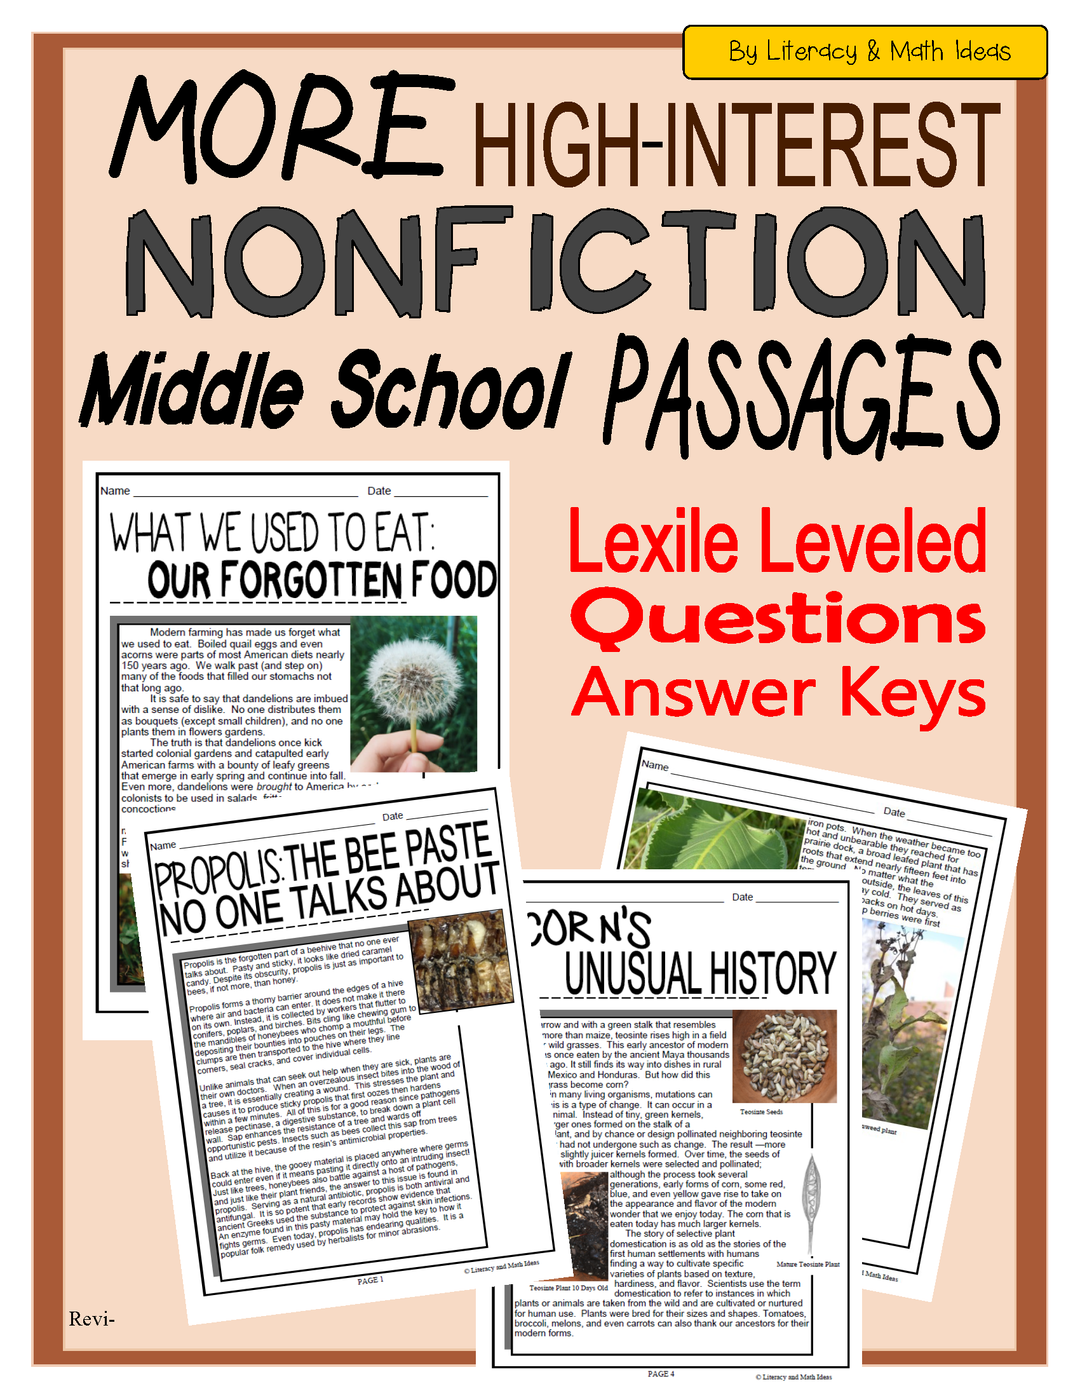 More High-Interest Nonfiction Passages (Middle School)